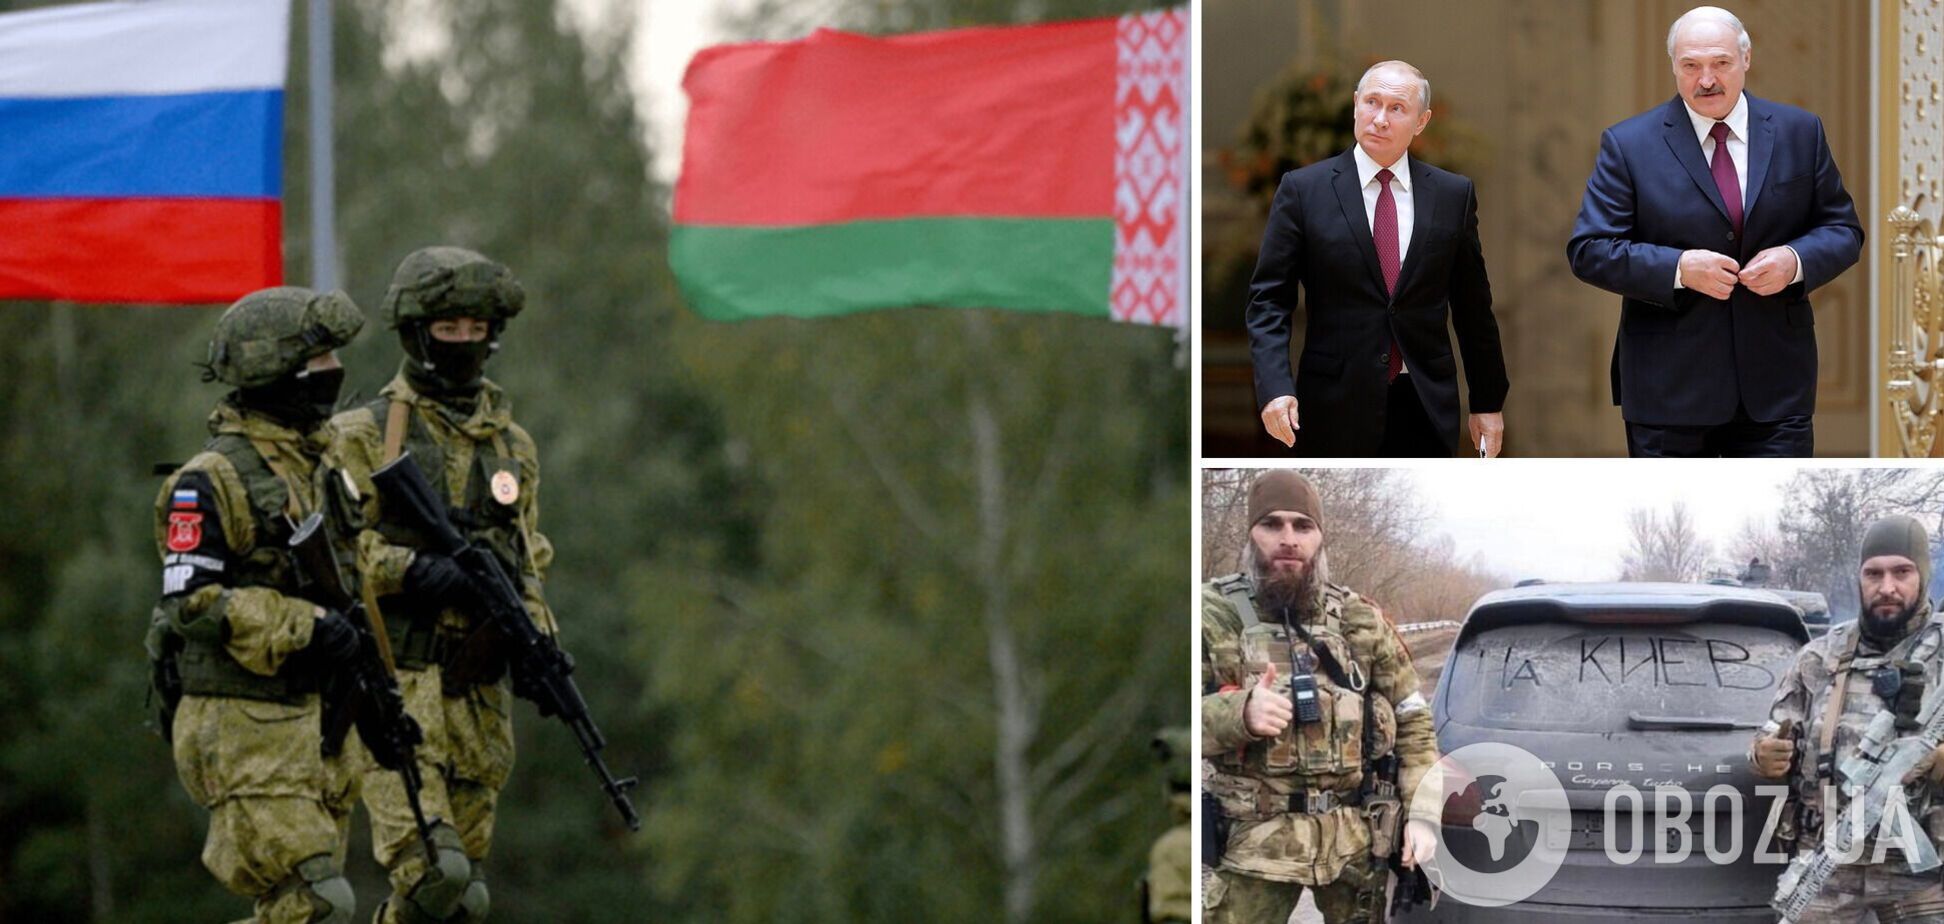 Опасности наземных действий из Беларуси сейчас нет